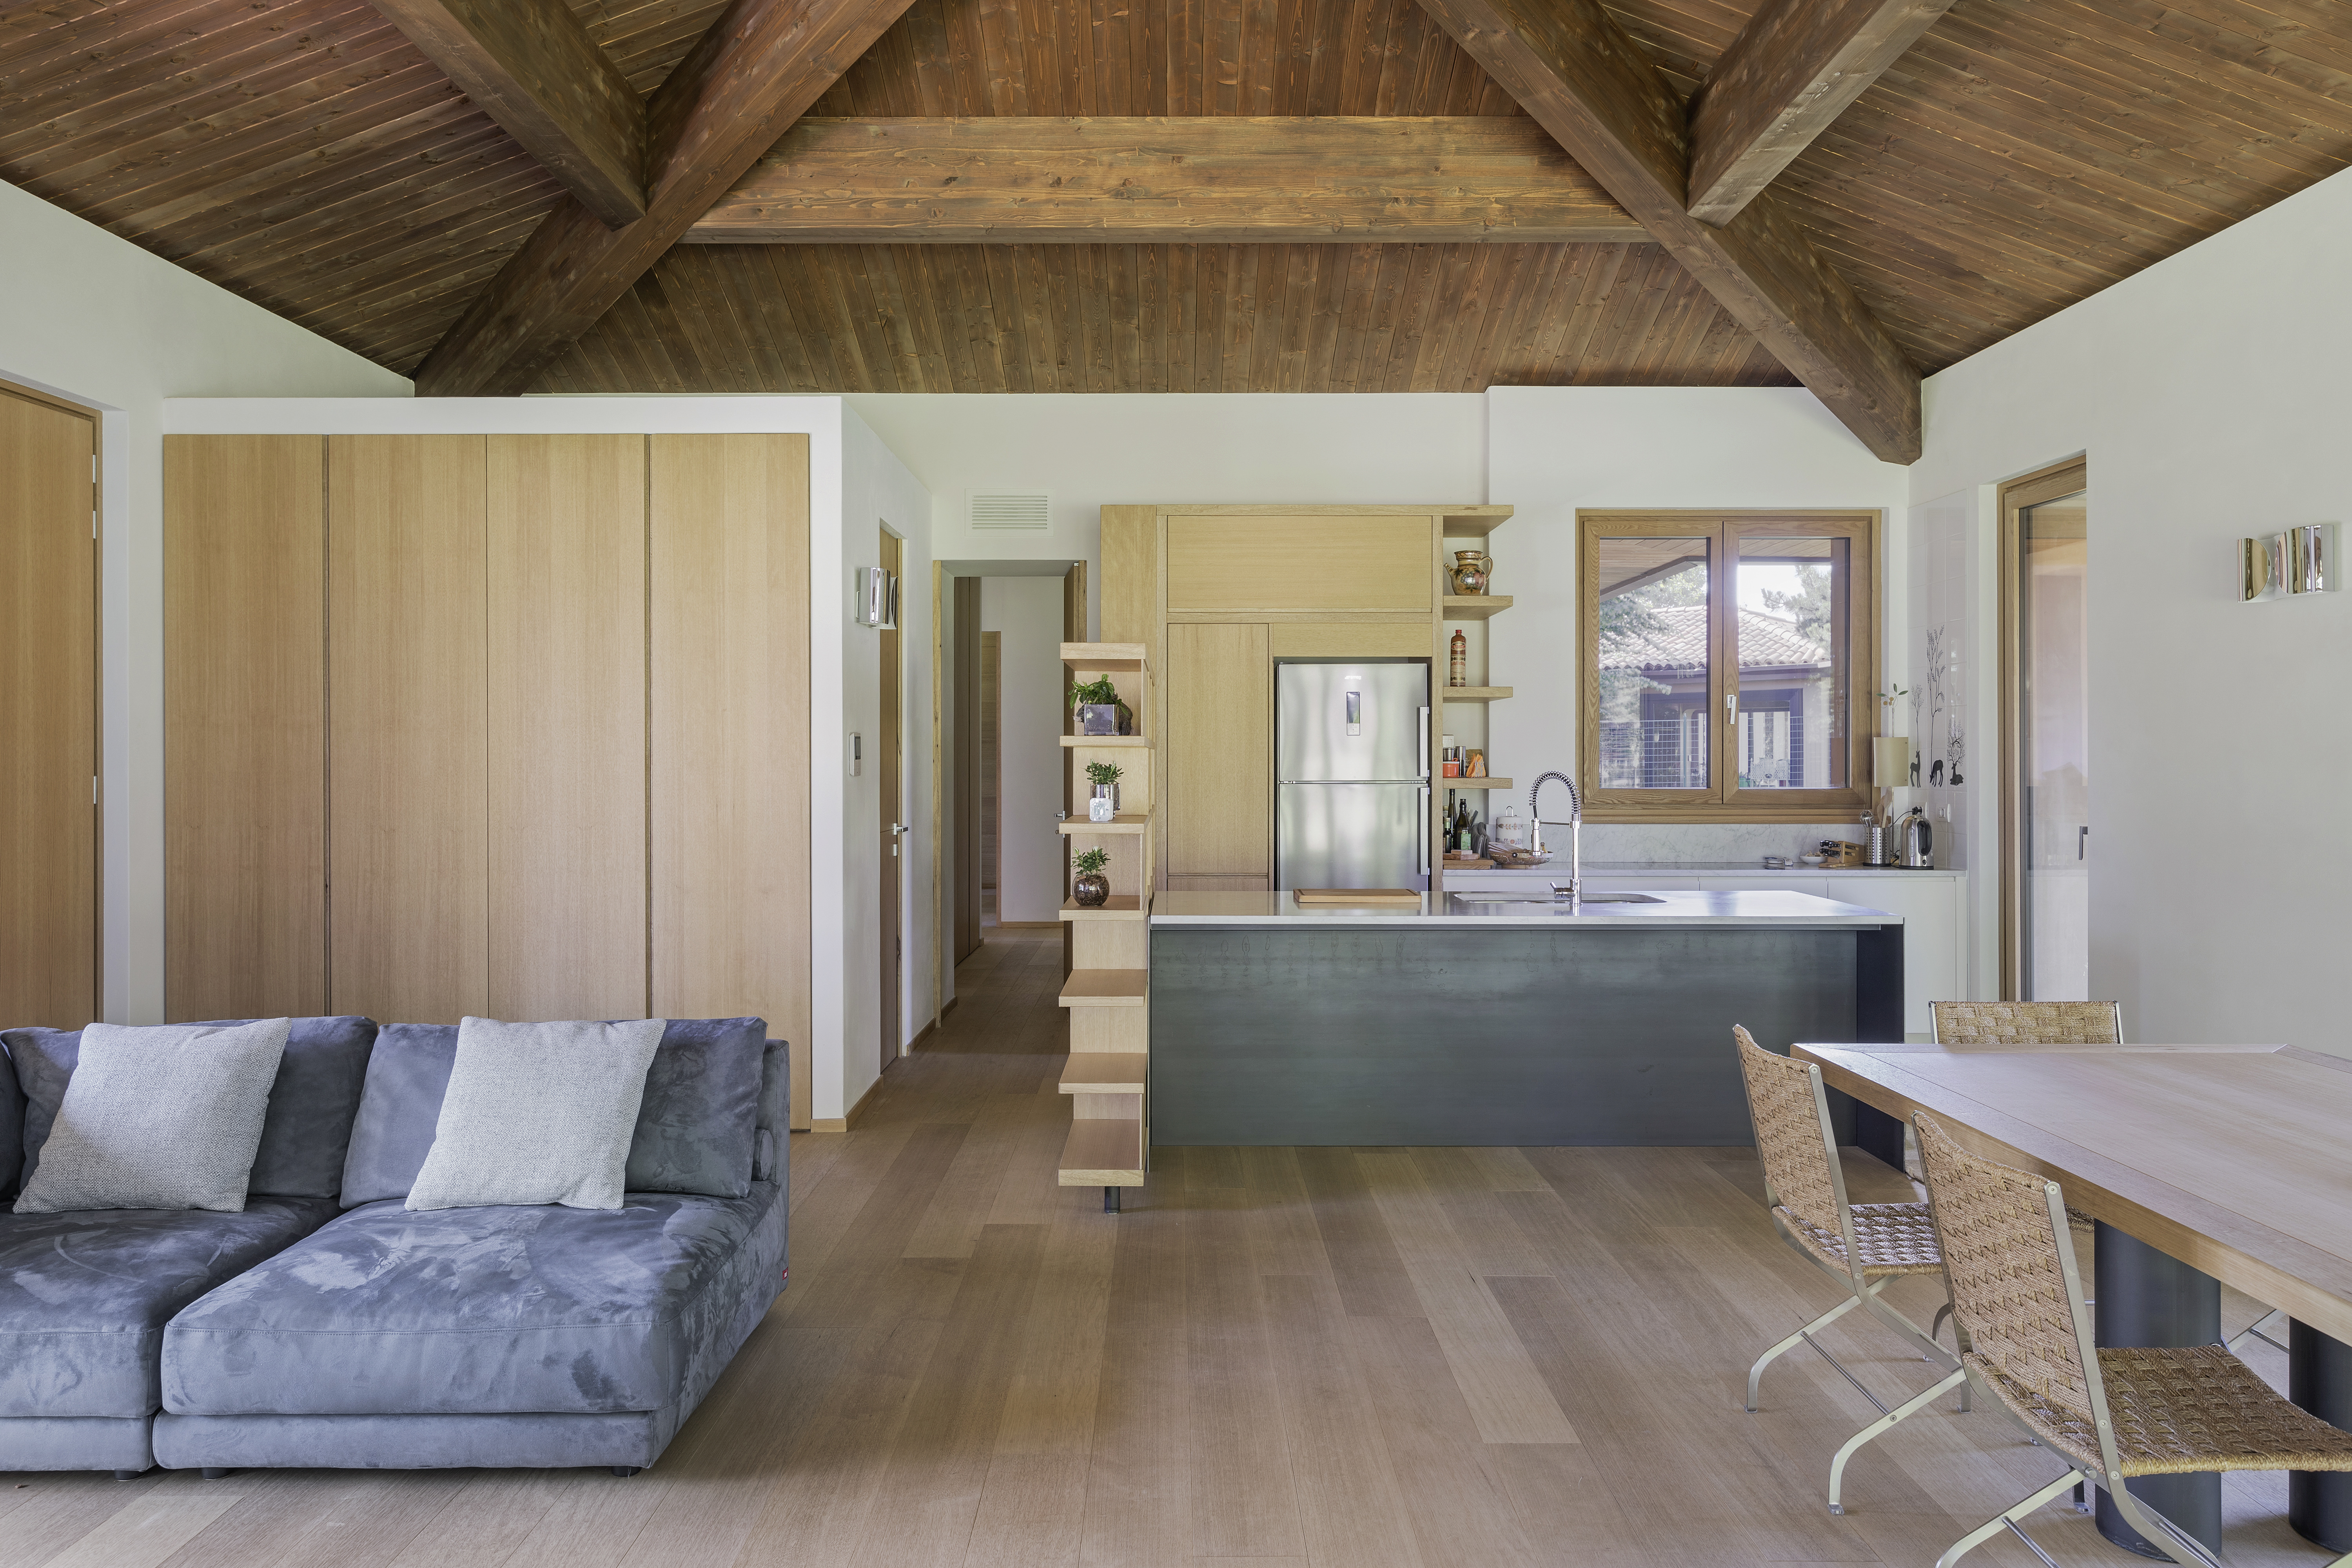 Interni: openspace con pavimento in parquet e tetto in legno a vista 